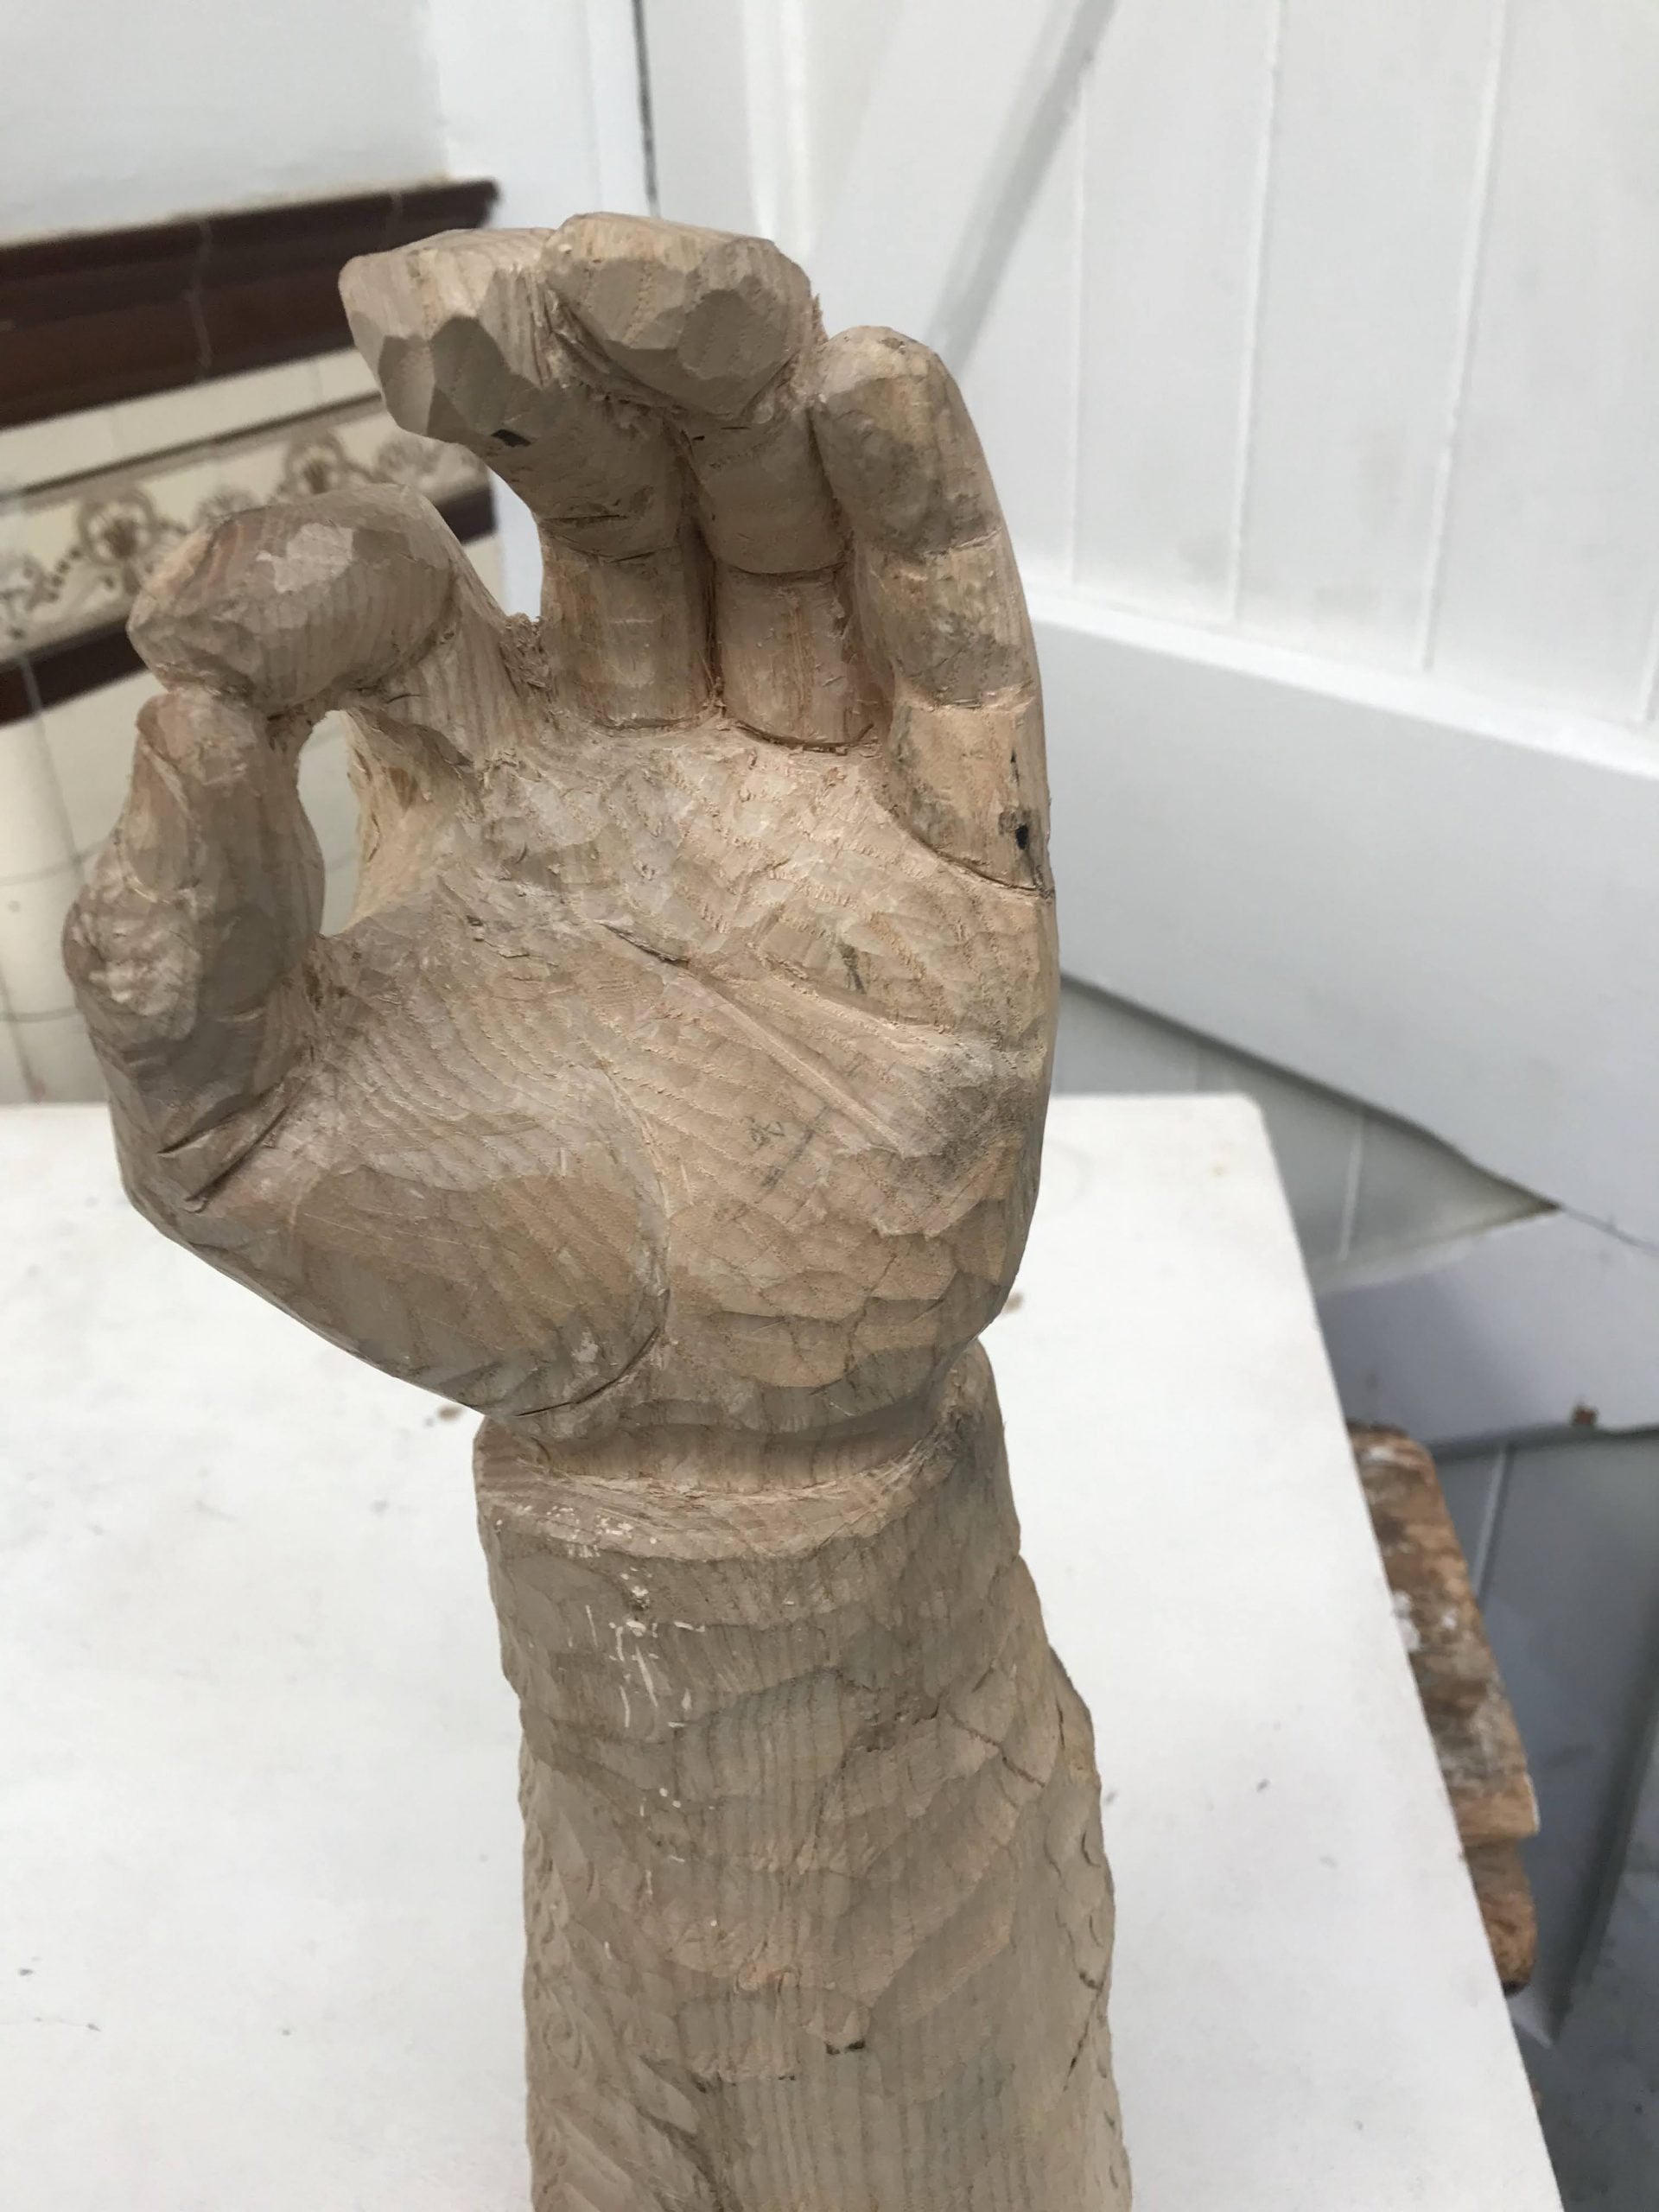 Wooden hand sculpture.